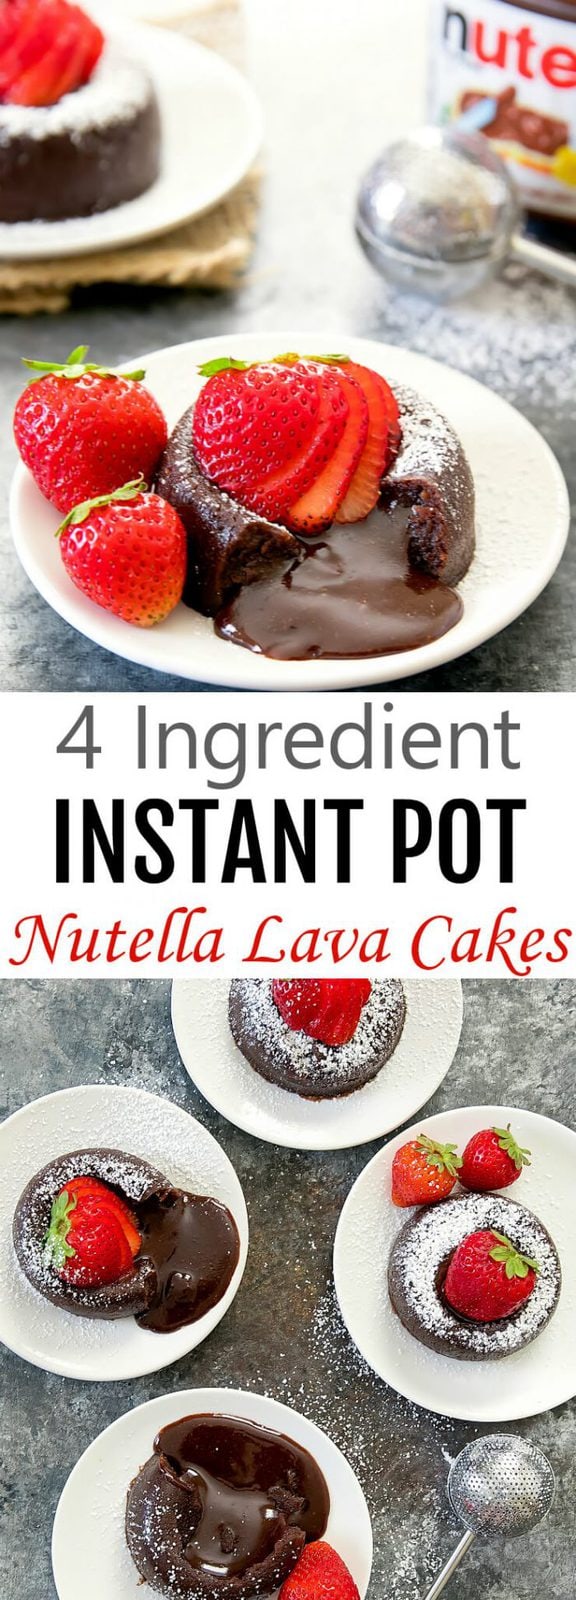 4 Ingredient Instant Pot Nutella Lava Cakes